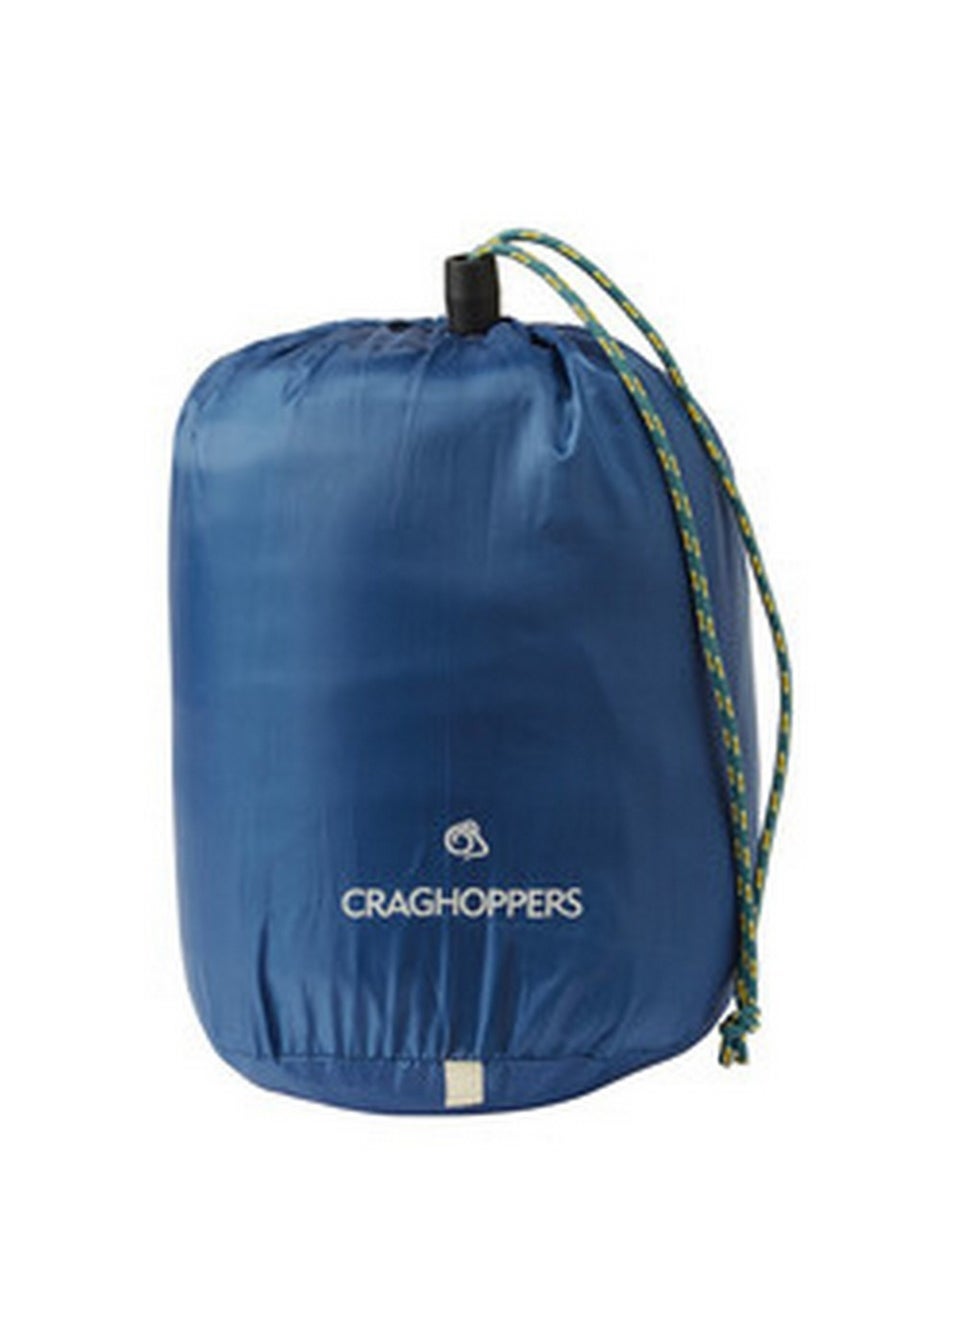 Craghoppers Teal Blue Stretch Sleeping Bag Liner